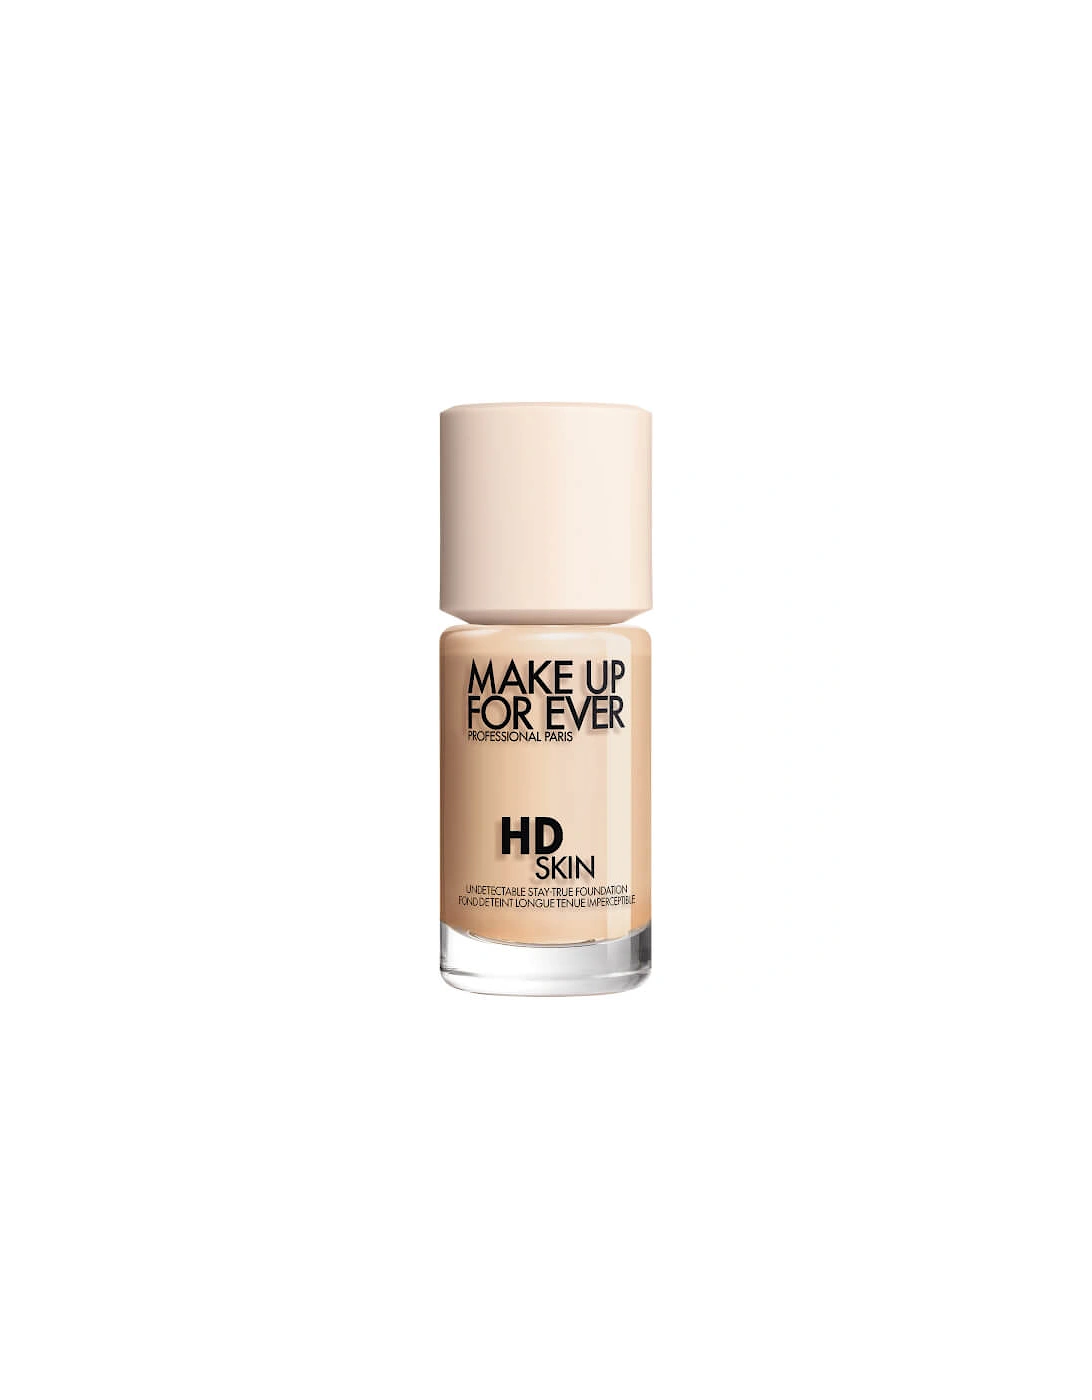 HD Skin Foundation - 1Y04 Warm Alabaster, 2 of 1